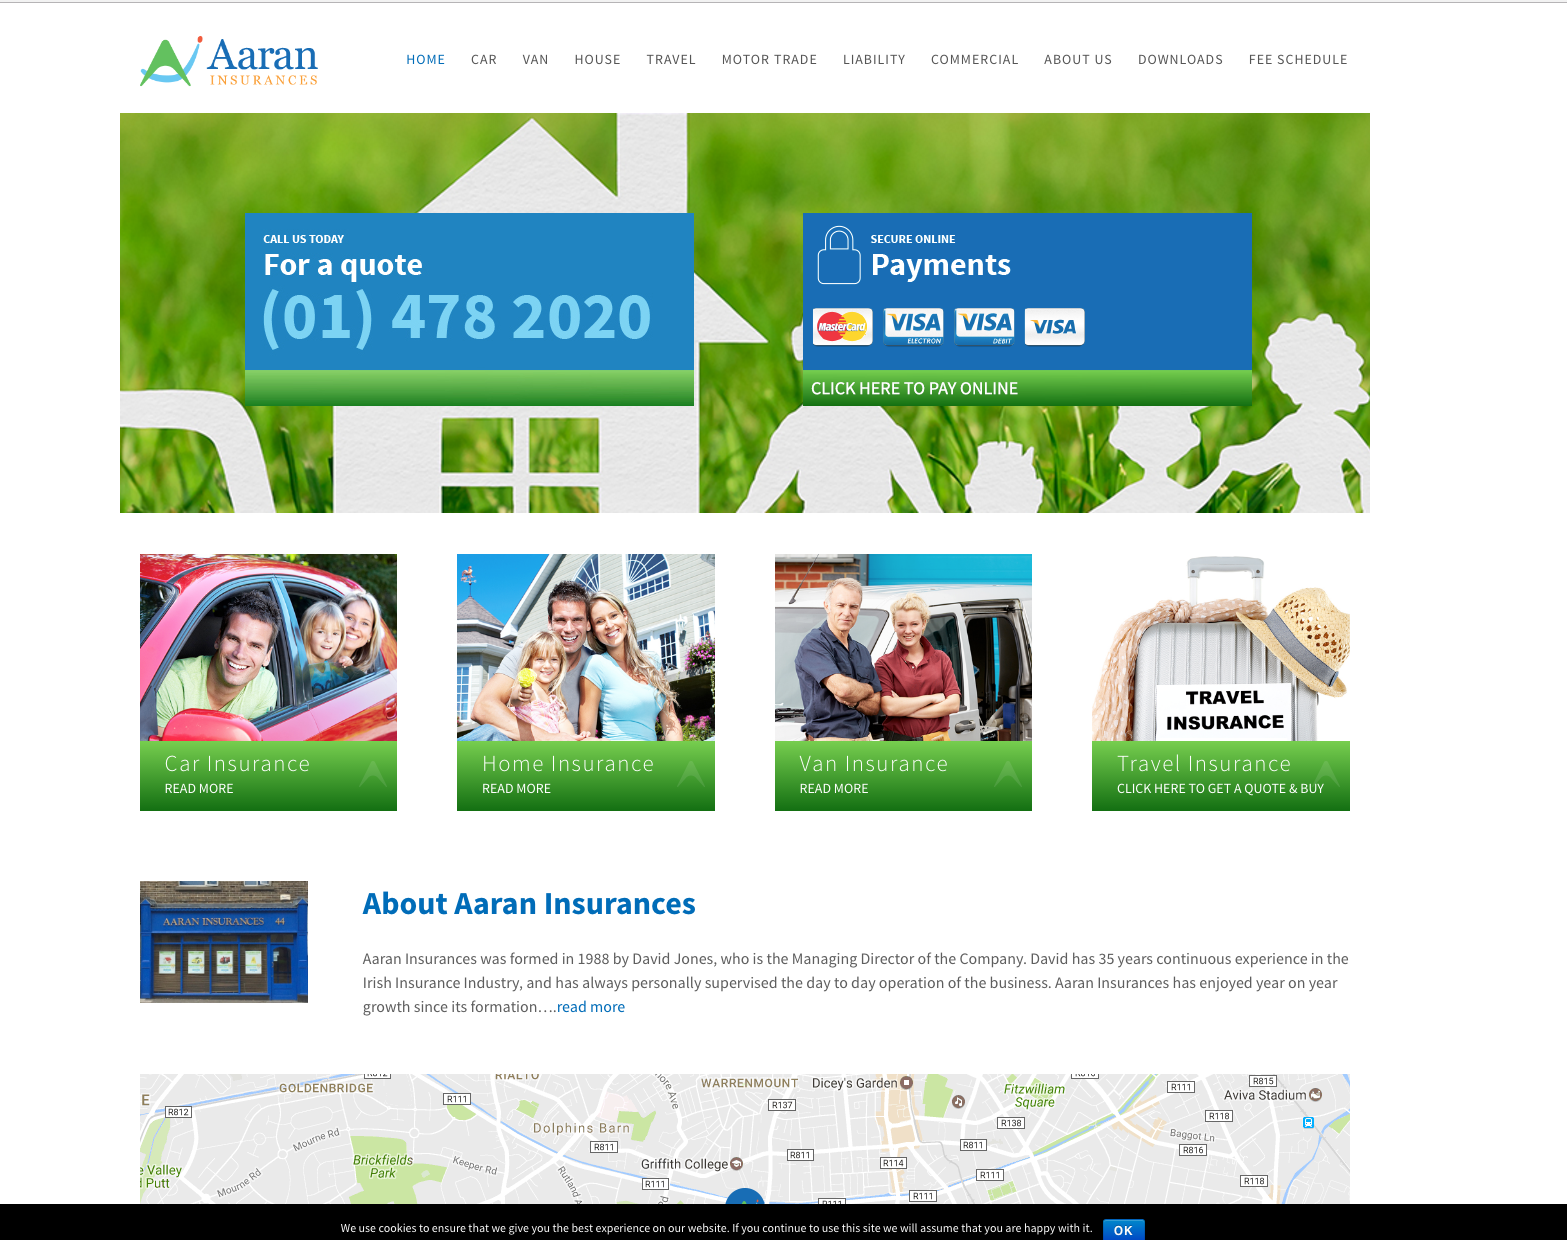 Aaron Insurances website design